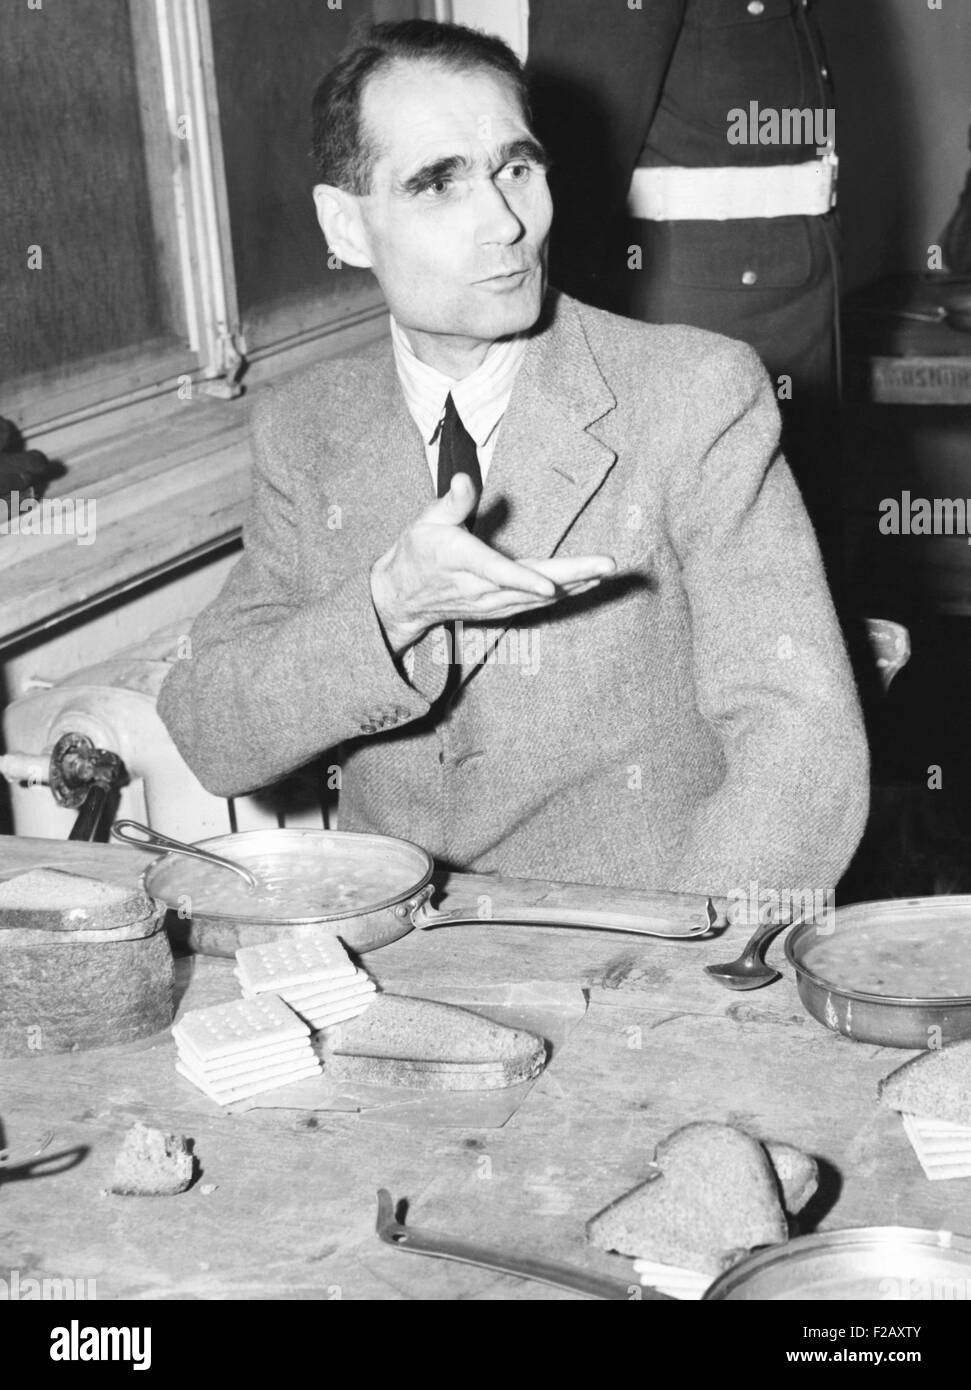 Rudolf Hess, Adolf Hitler a une fois adjoint, de prendre un repas à la prison de Nuremberg. Soupe, pain et craquelins étaient au menu pour le Nazi défendeurs. 7 décembre 1945 (CSU 2015 9 958) Banque D'Images